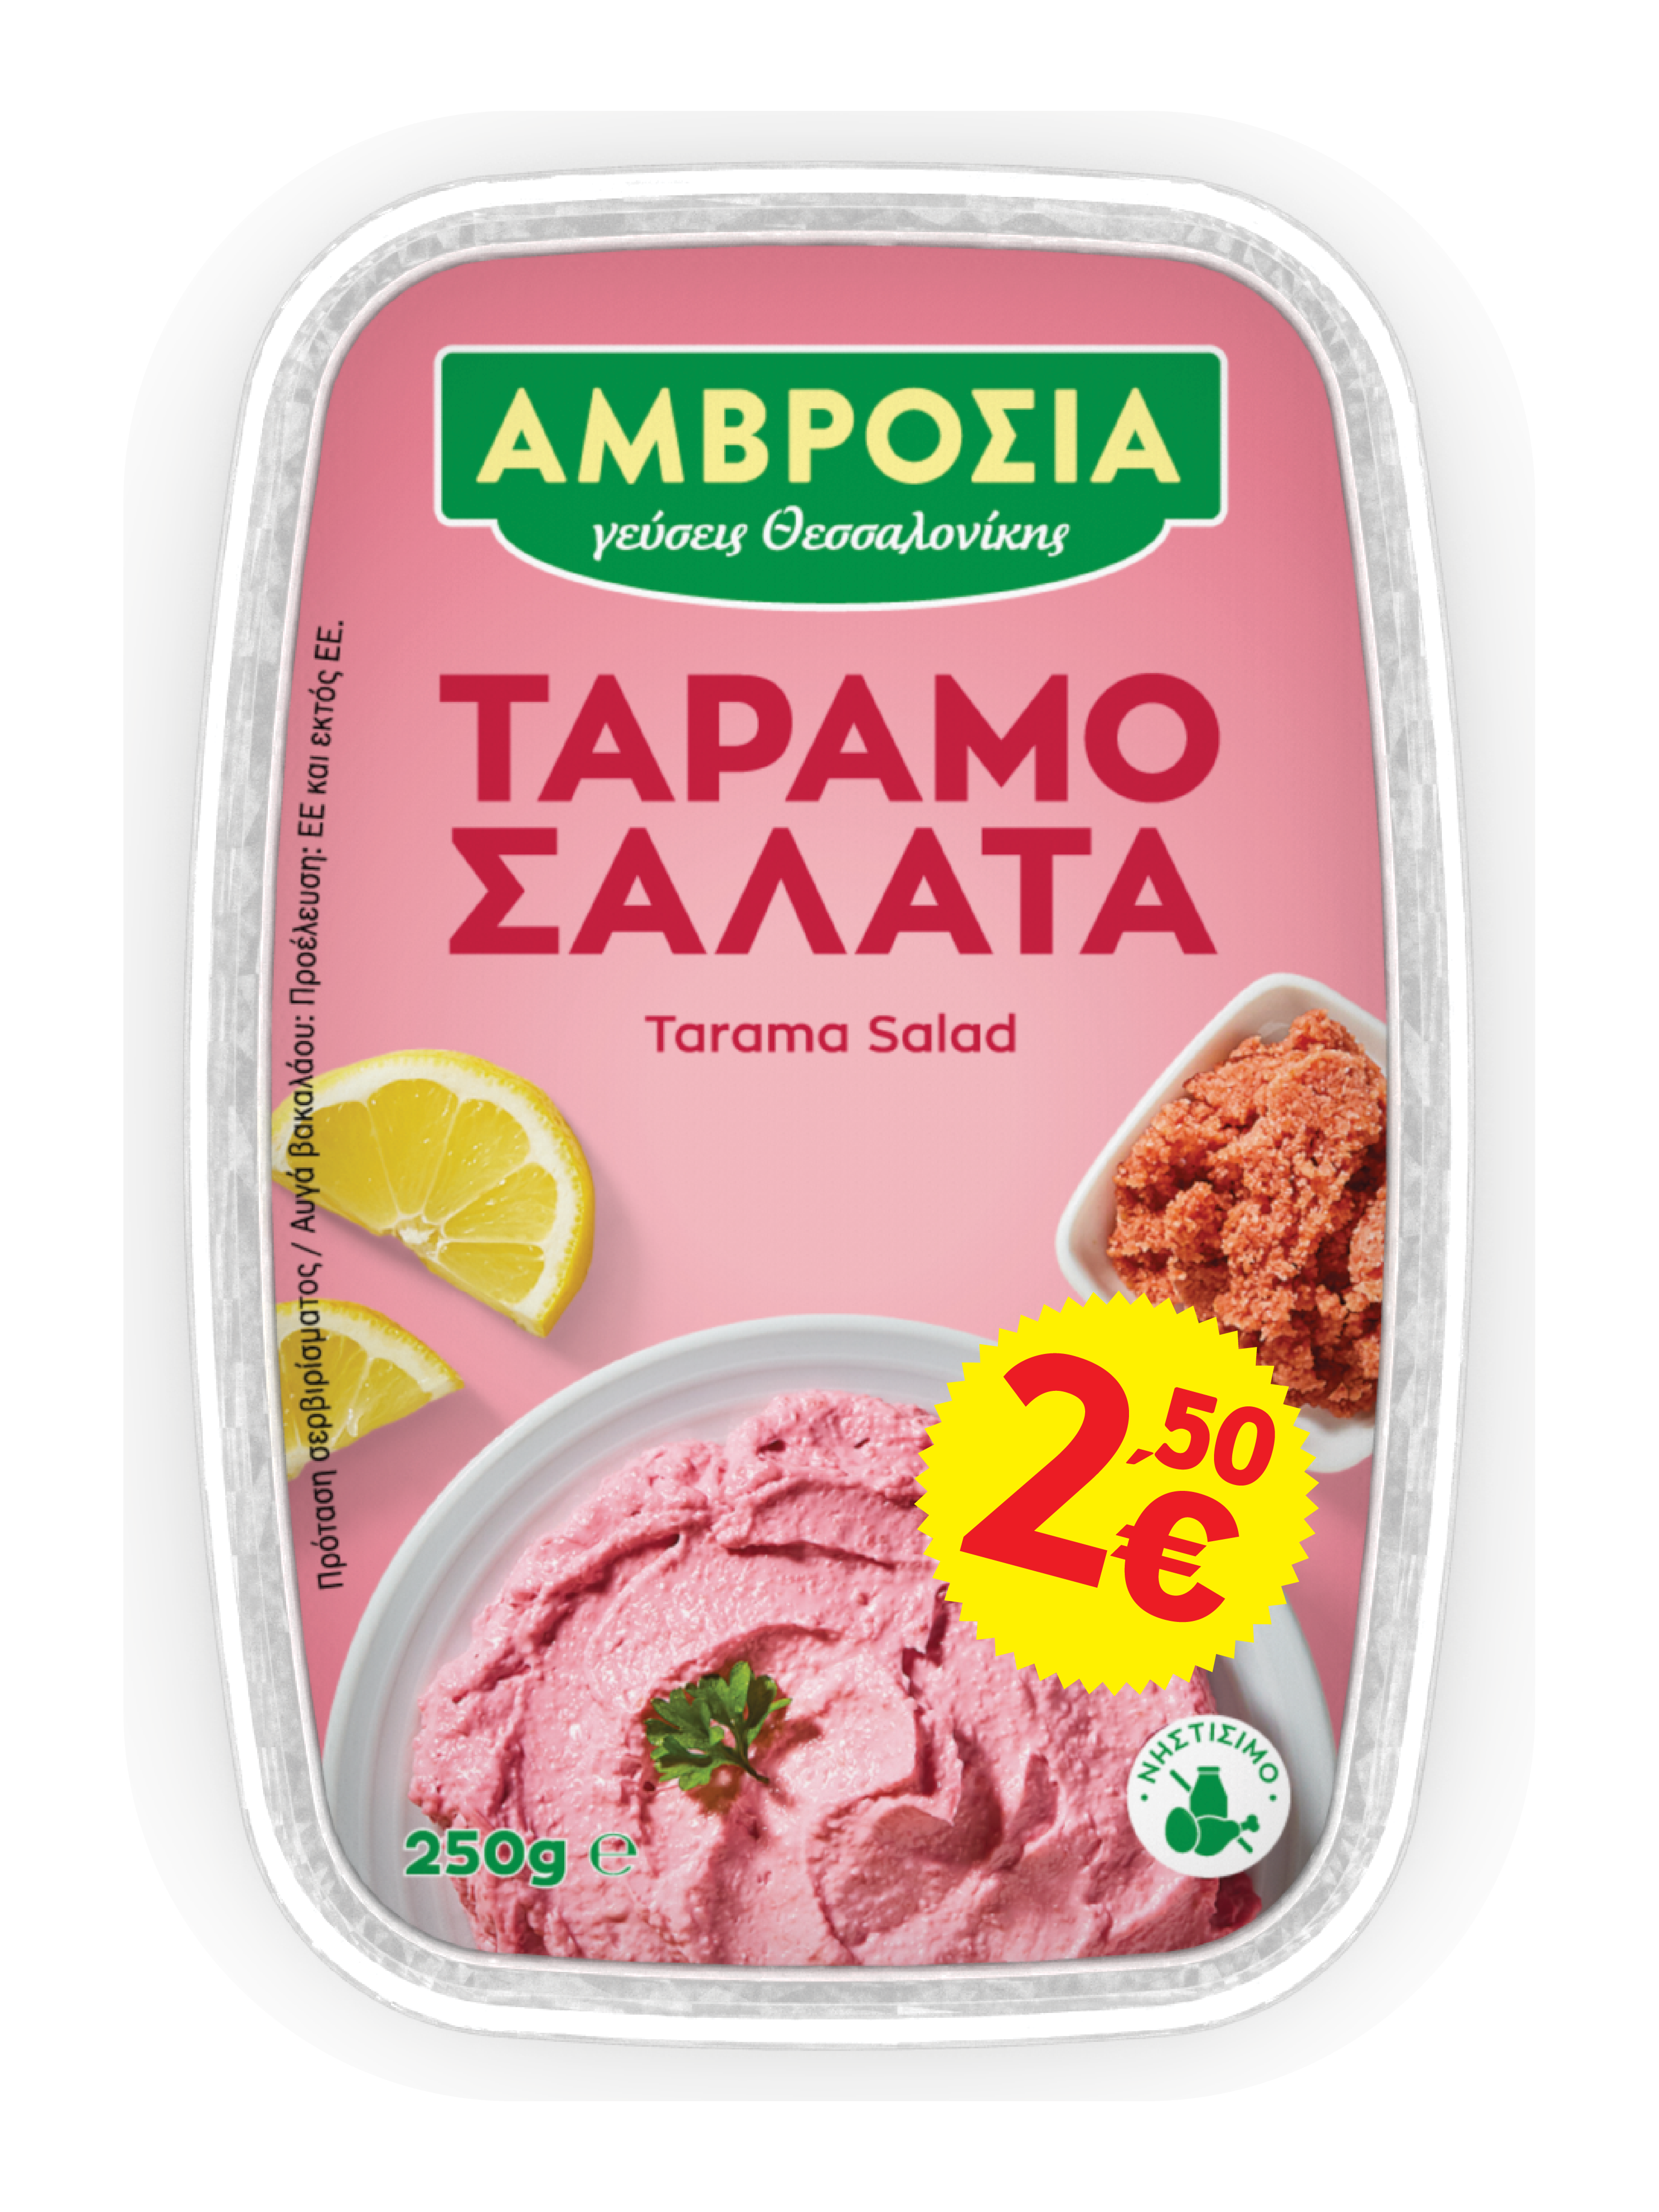 Taramosalata (tarama) - 250g